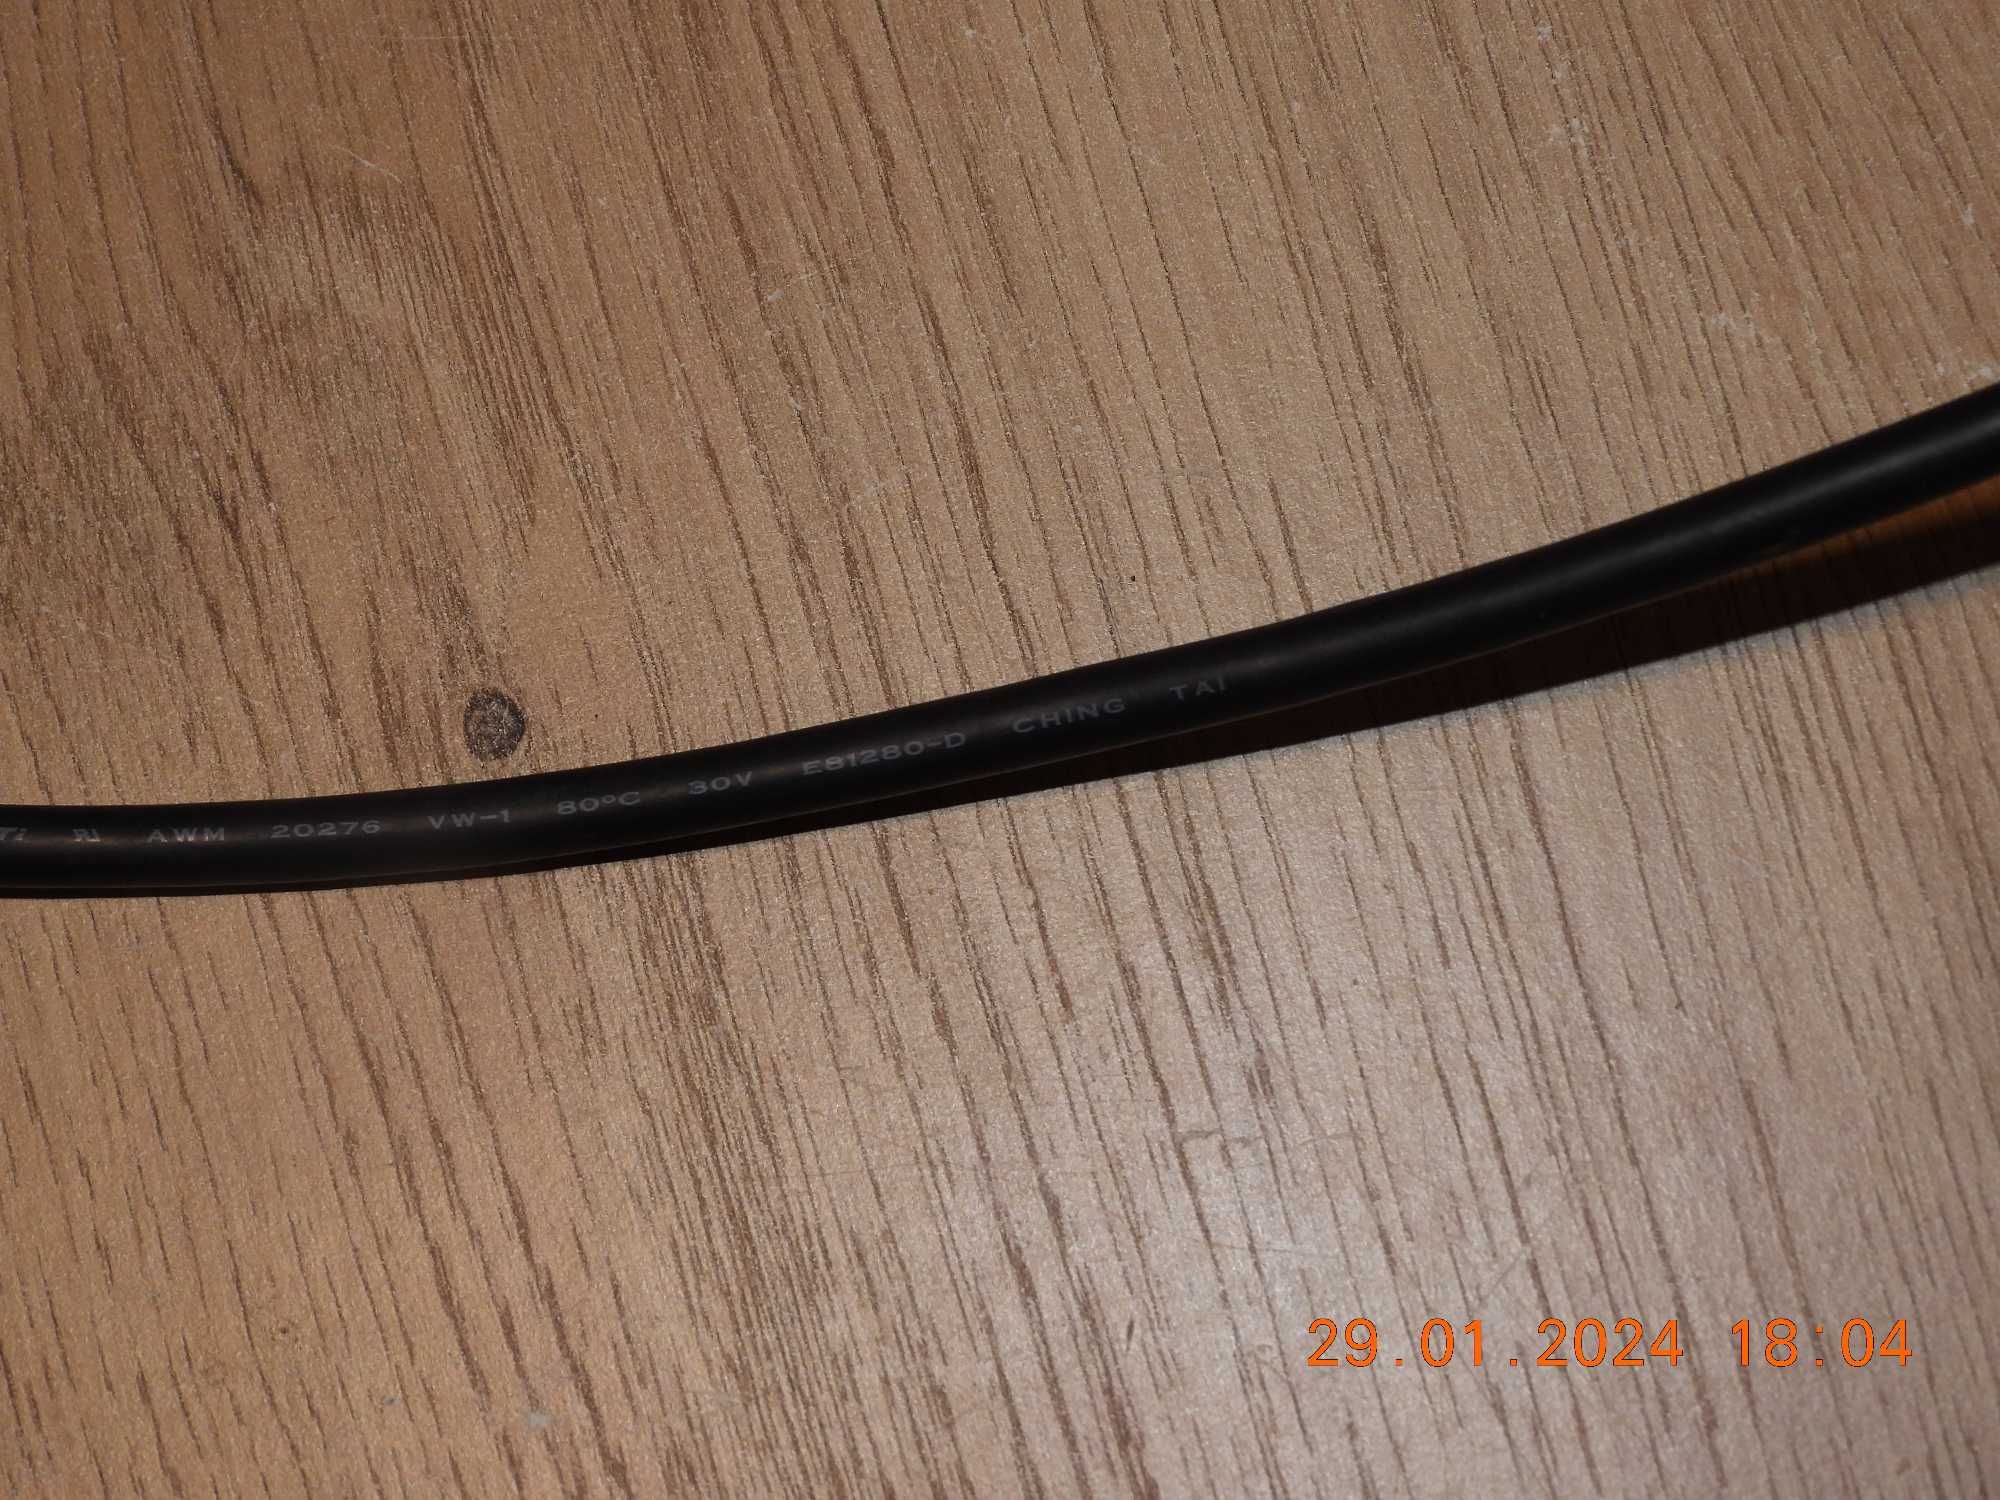 Kabel HDMI - Ching Tai - 180cm